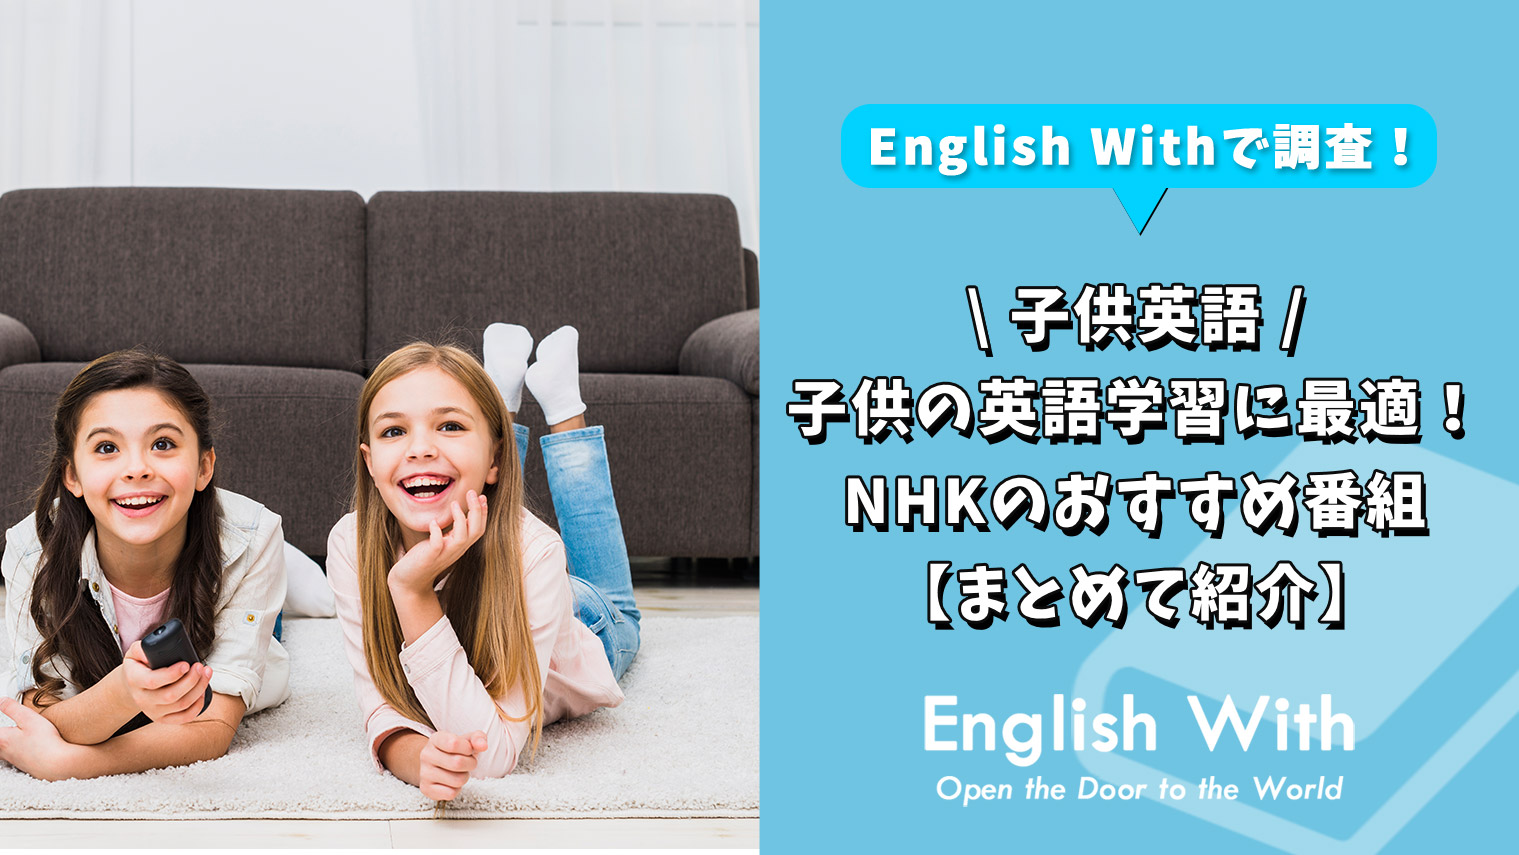 Nhkは子供の英語学習に最適 おすすめ番組を紹介 8作品 おすすめ英会話 英語学習の比較 ランキング English With